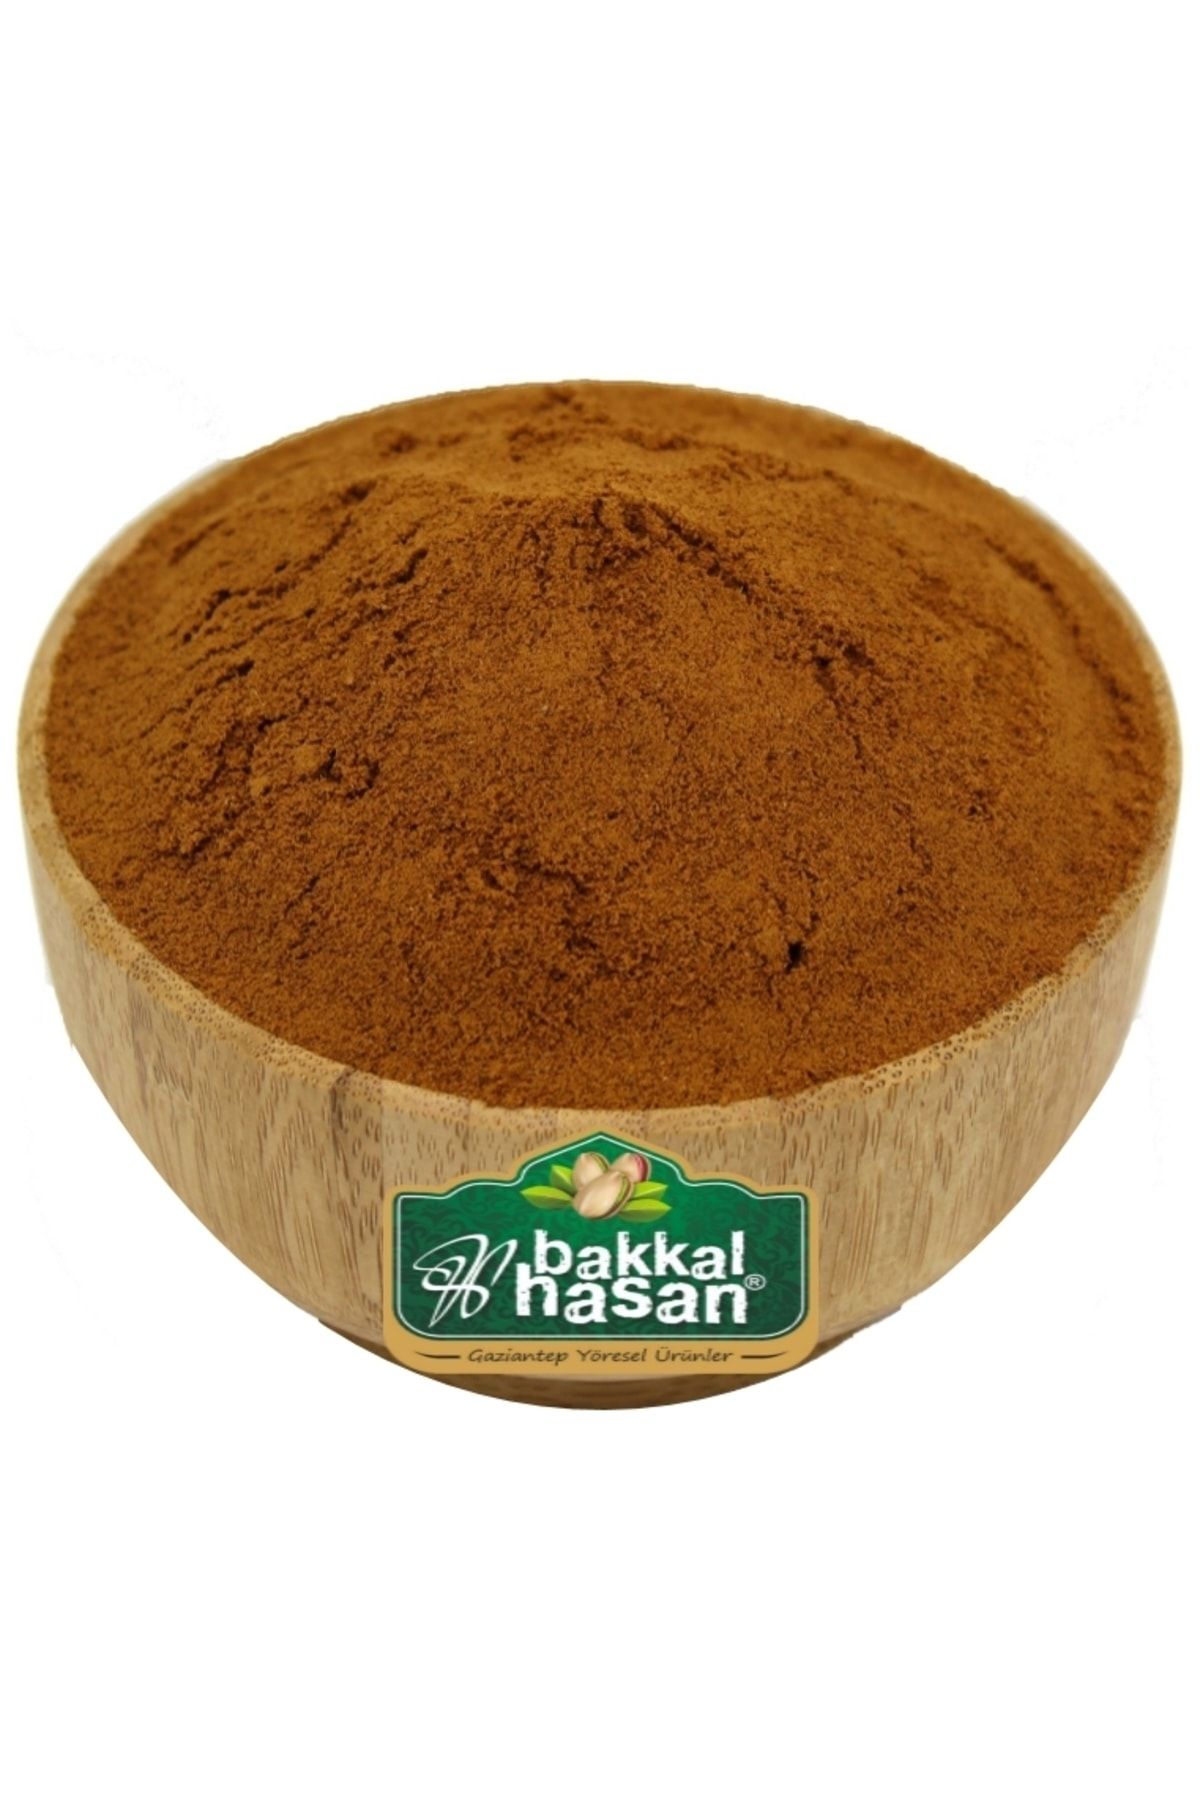 bakkal hasan Damla Sakızlı Toz Kahve 3 kg - Bakkal Hasan